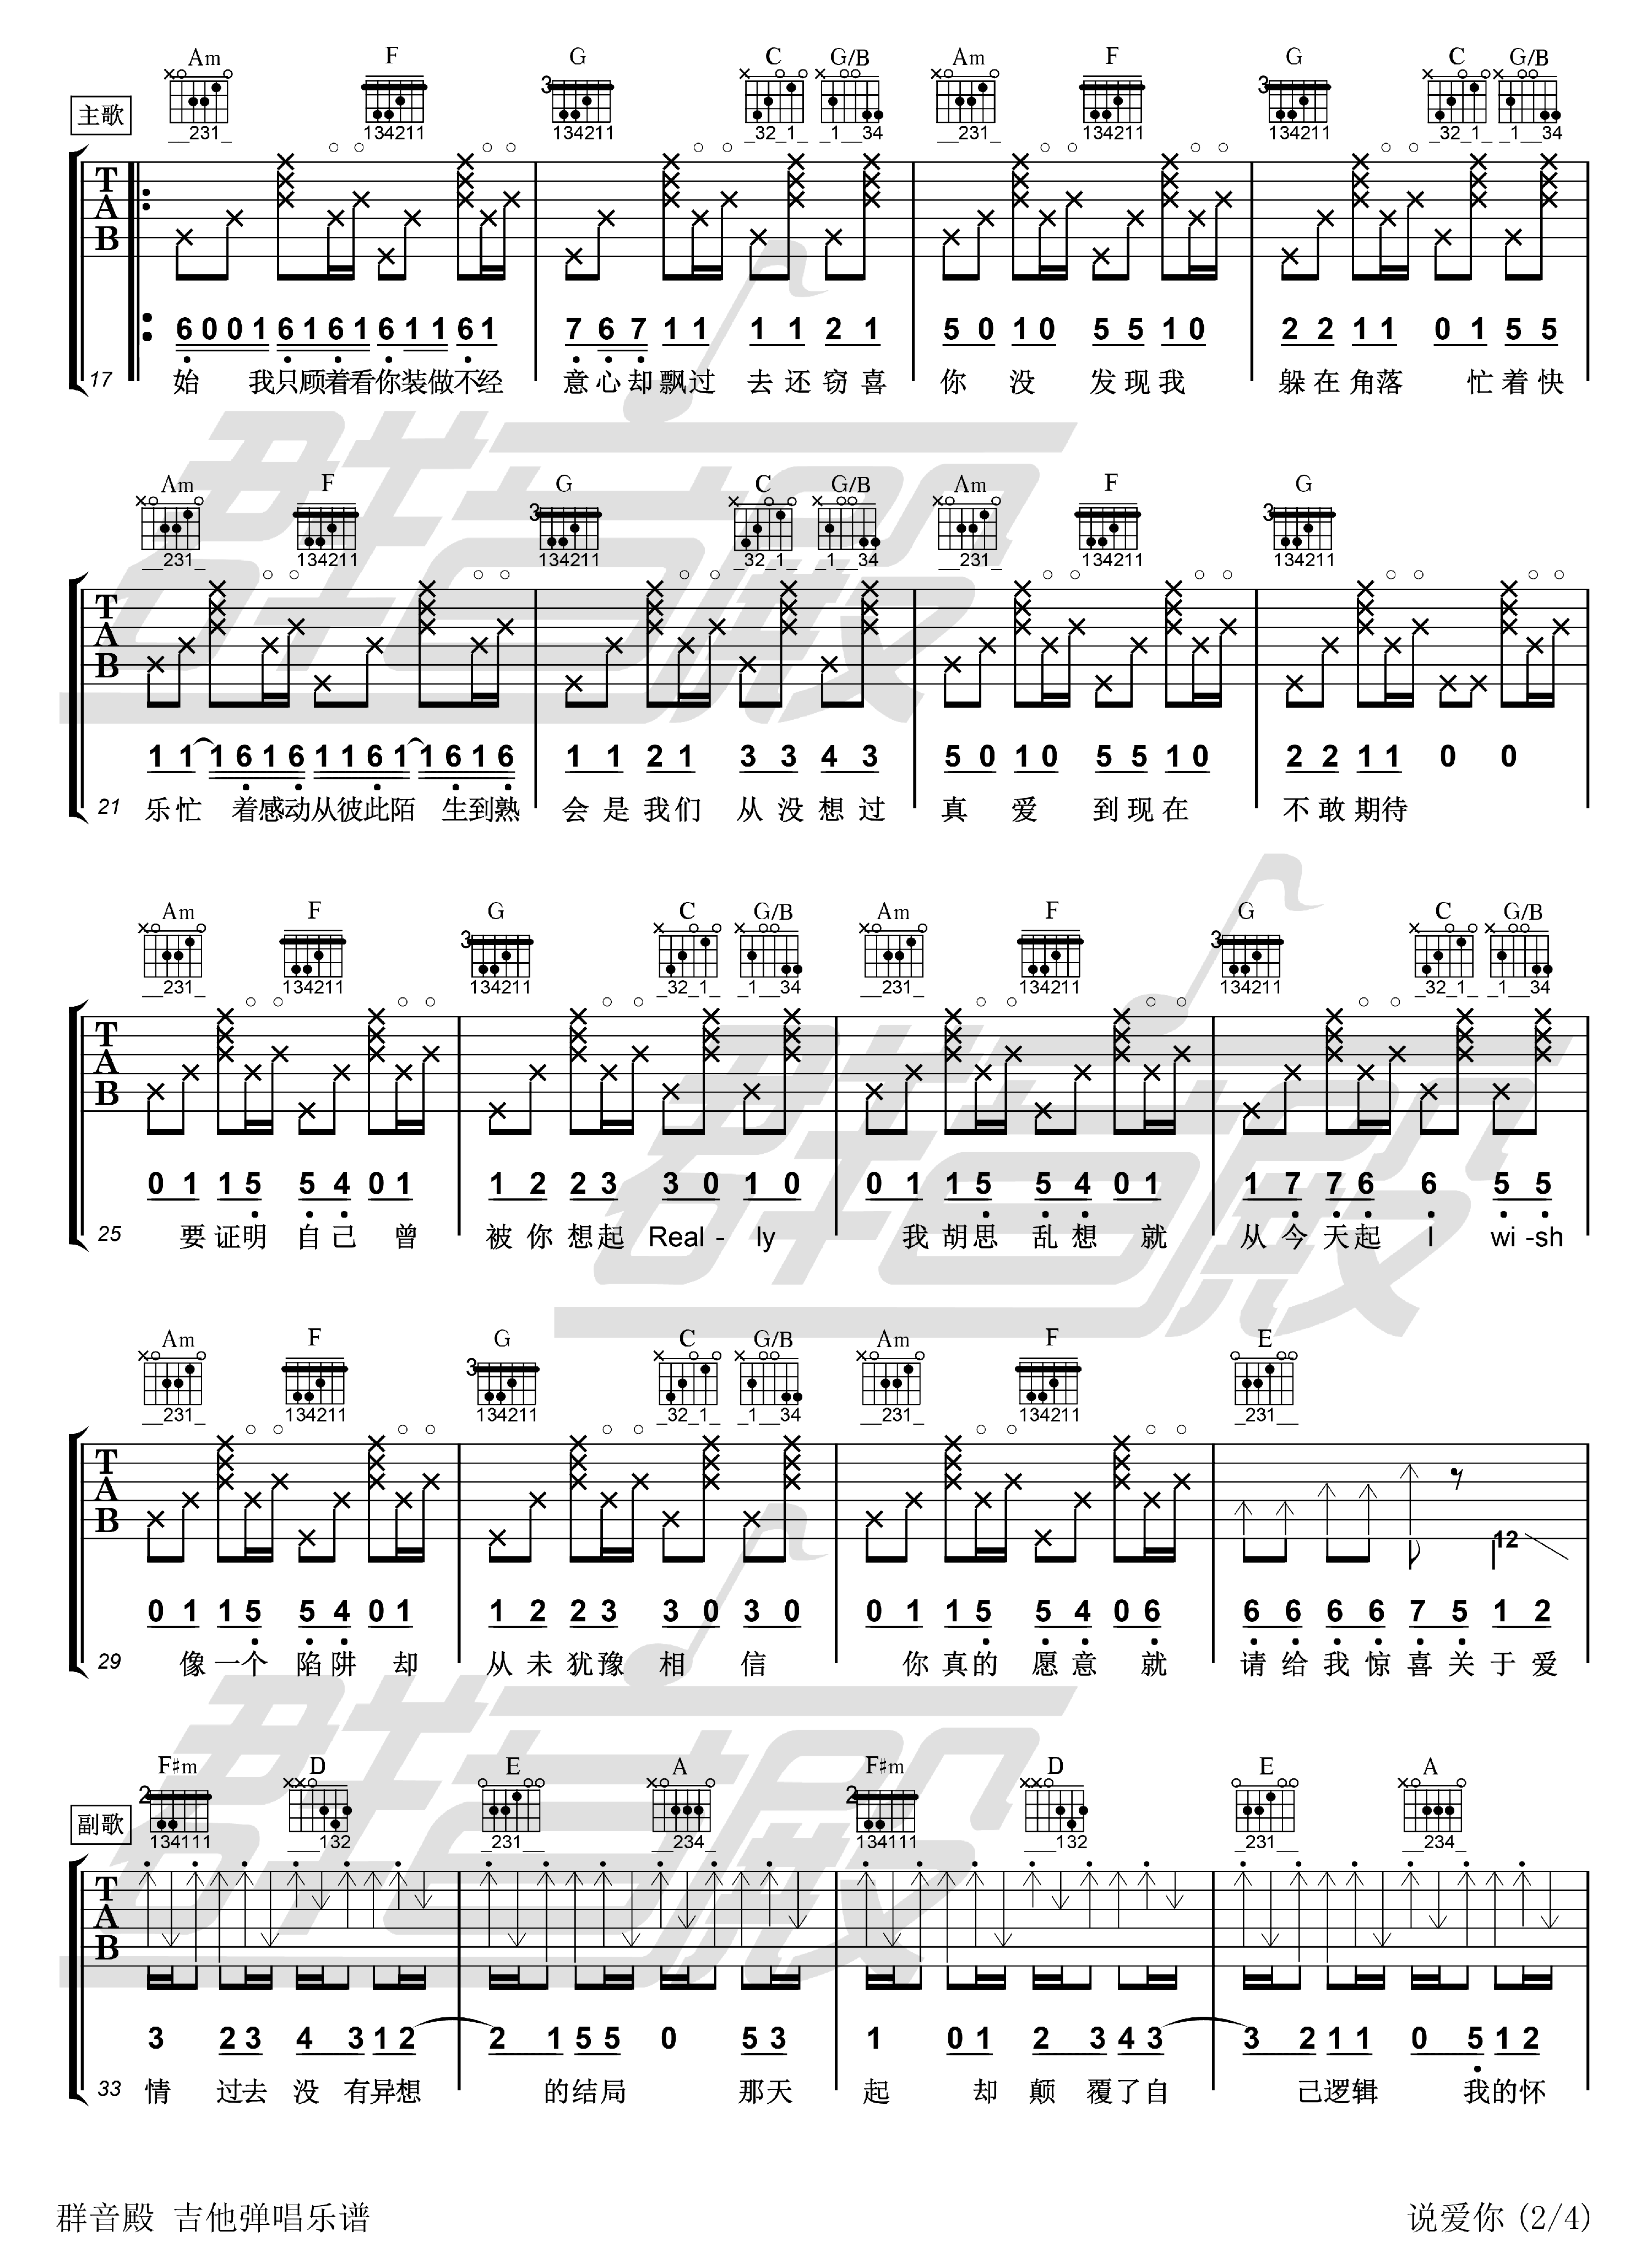 卢家宏吉他谱【蔡依林 说爱你】指弹版-吉他曲谱 - 乐器学习网